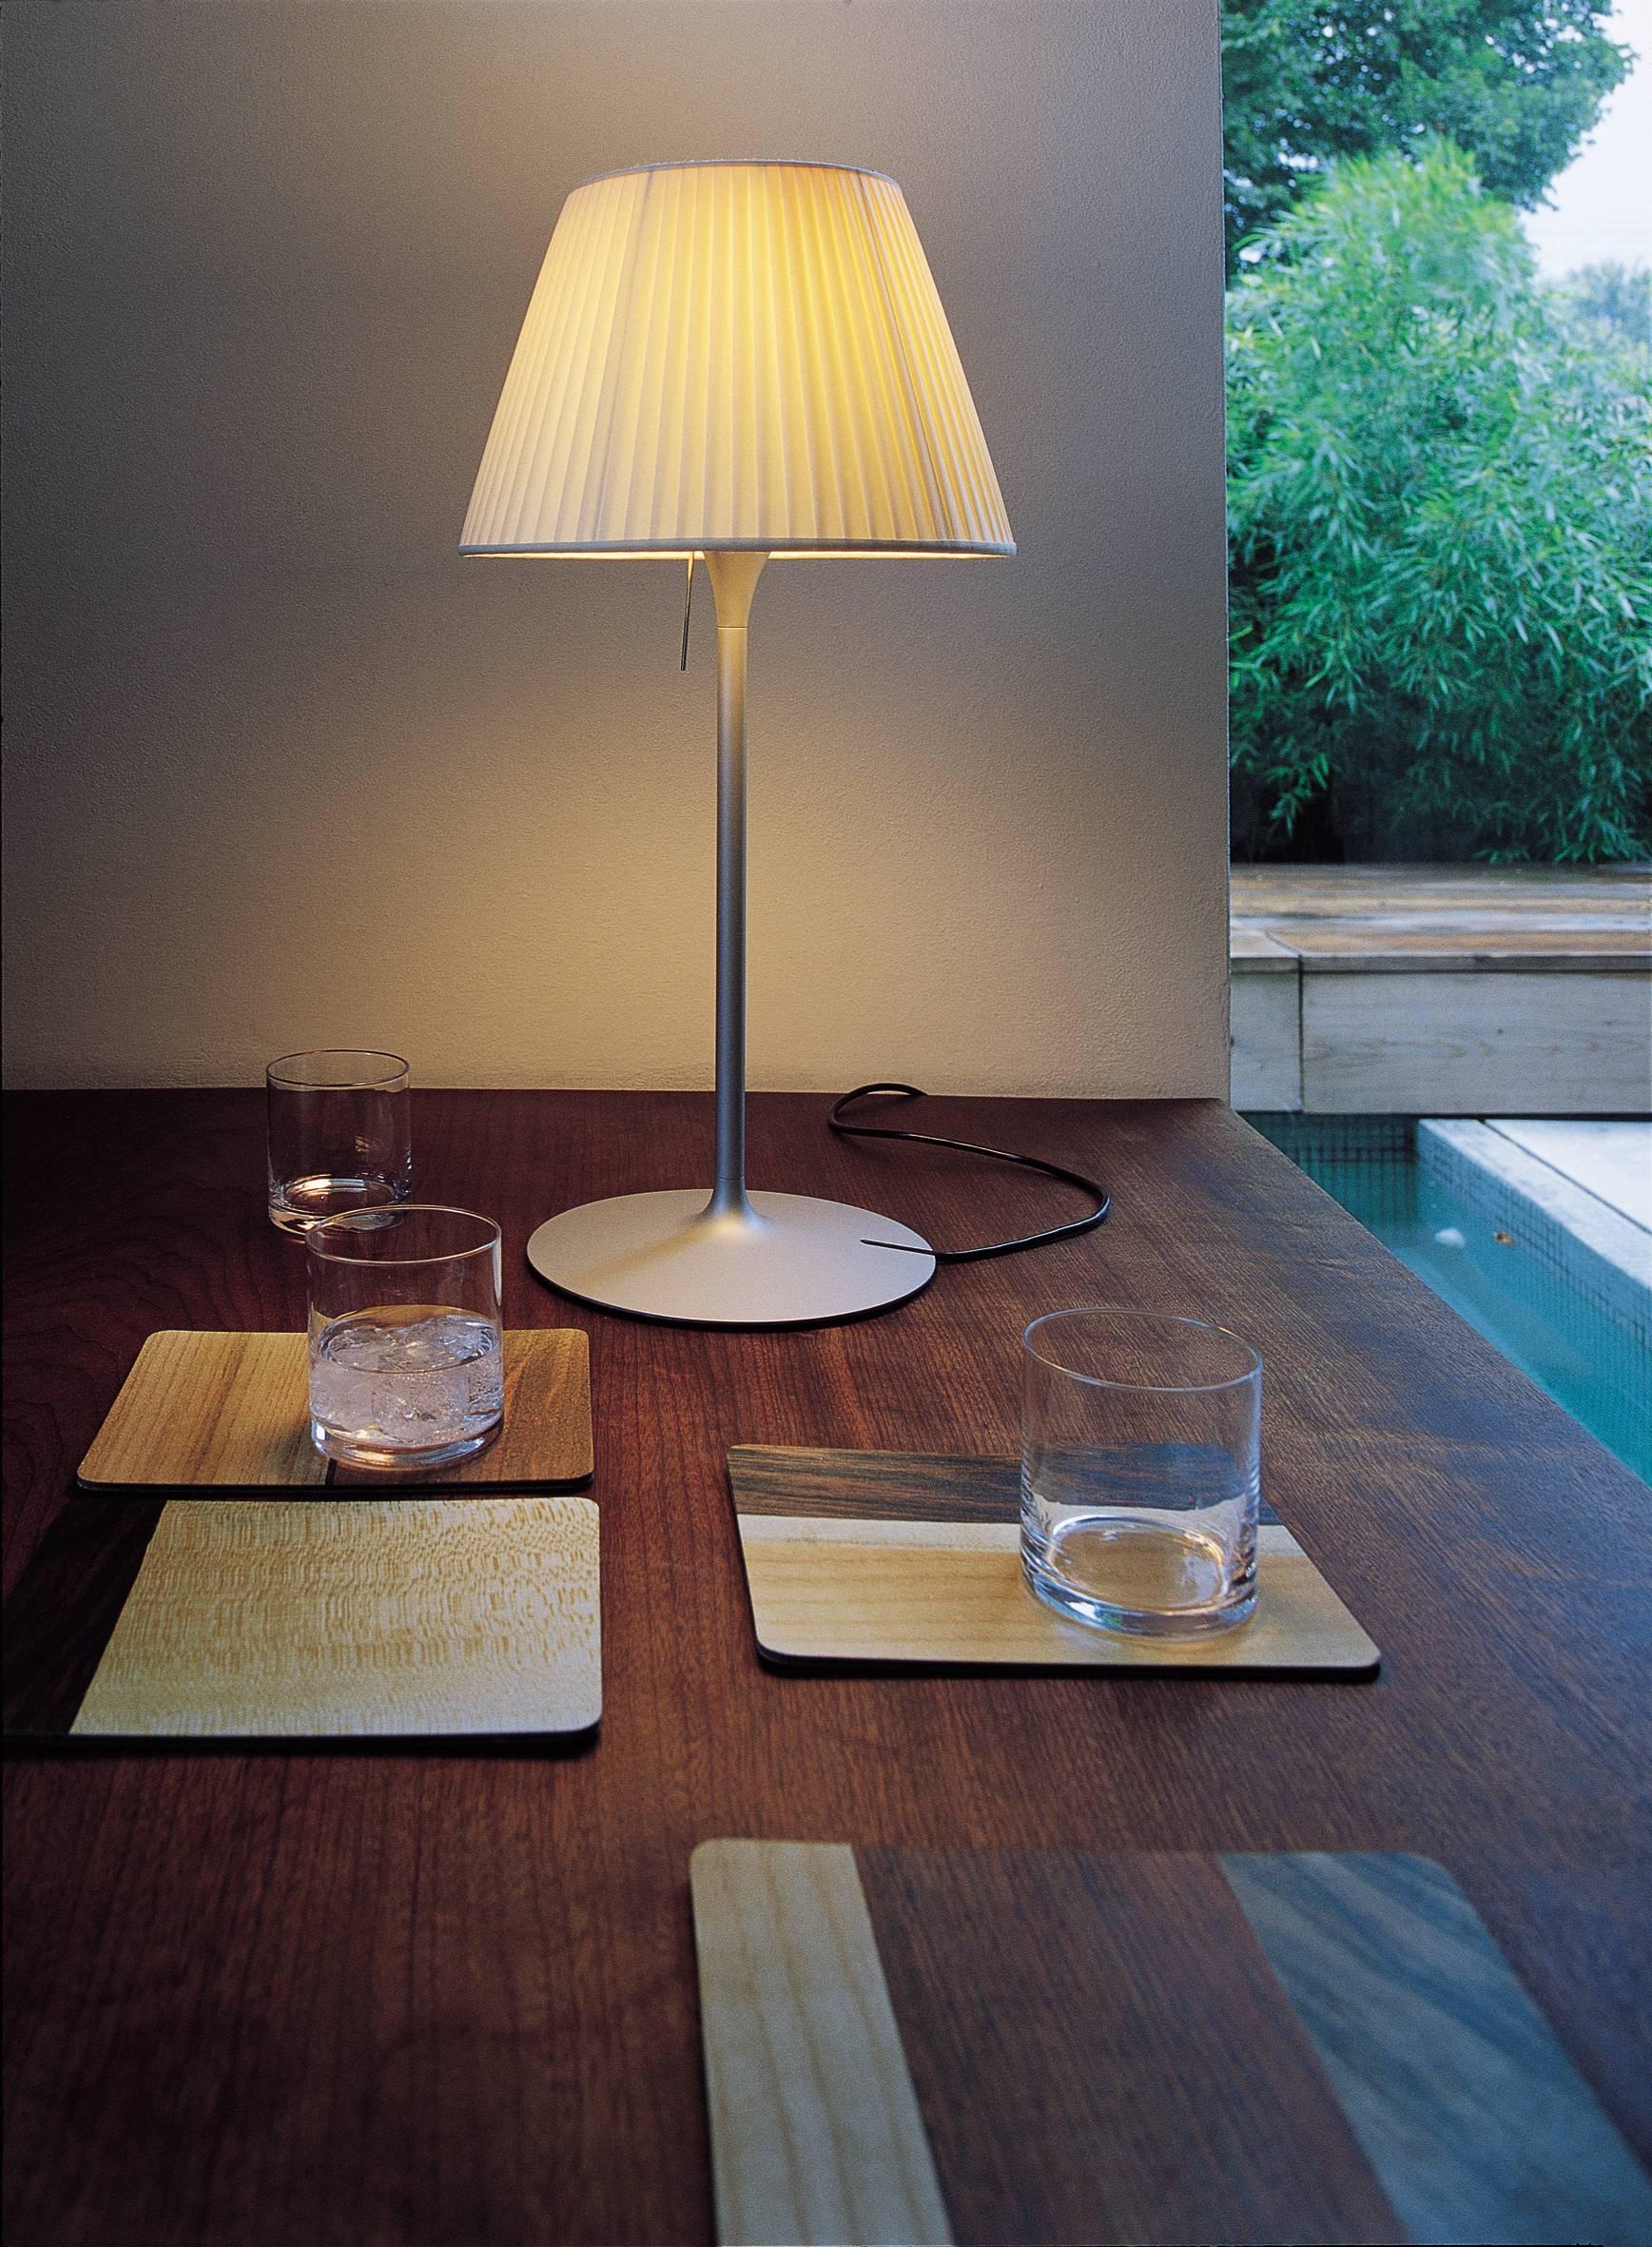 Diese atemberaubende und auffallend schlichte Tischleuchte gehört zur Romeo-Familie, die von dem innovativen Designer Philippe Starck entworfen wurde. Sie spendet diffuses Licht durch einen Schirm aus Plissé-Stoff und einen inneren Diffusor aus